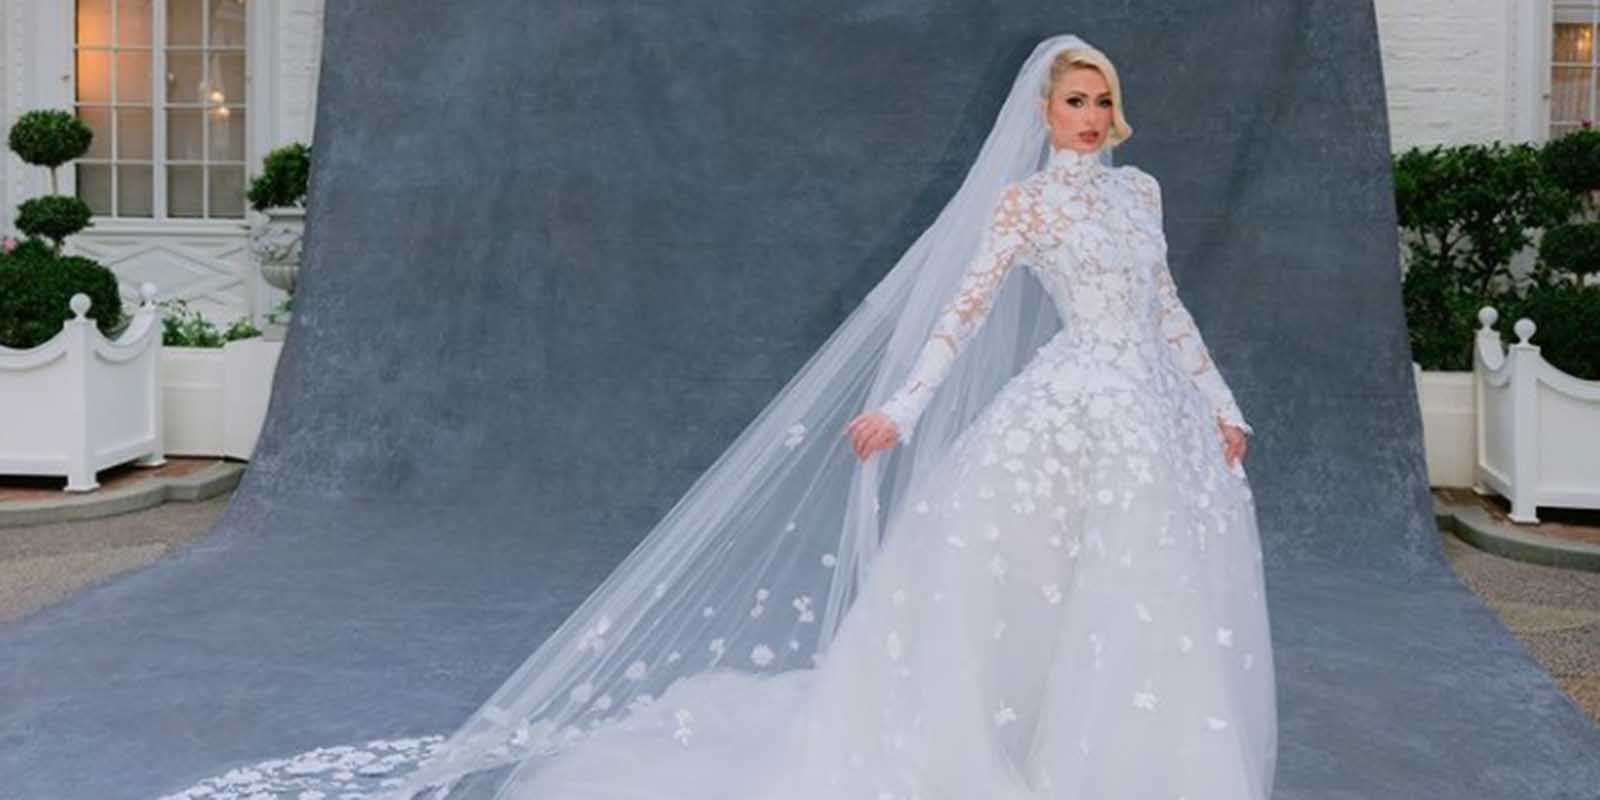 La espectacular boda de Paris Hilton: de los invitados vip al Oscar la Renta